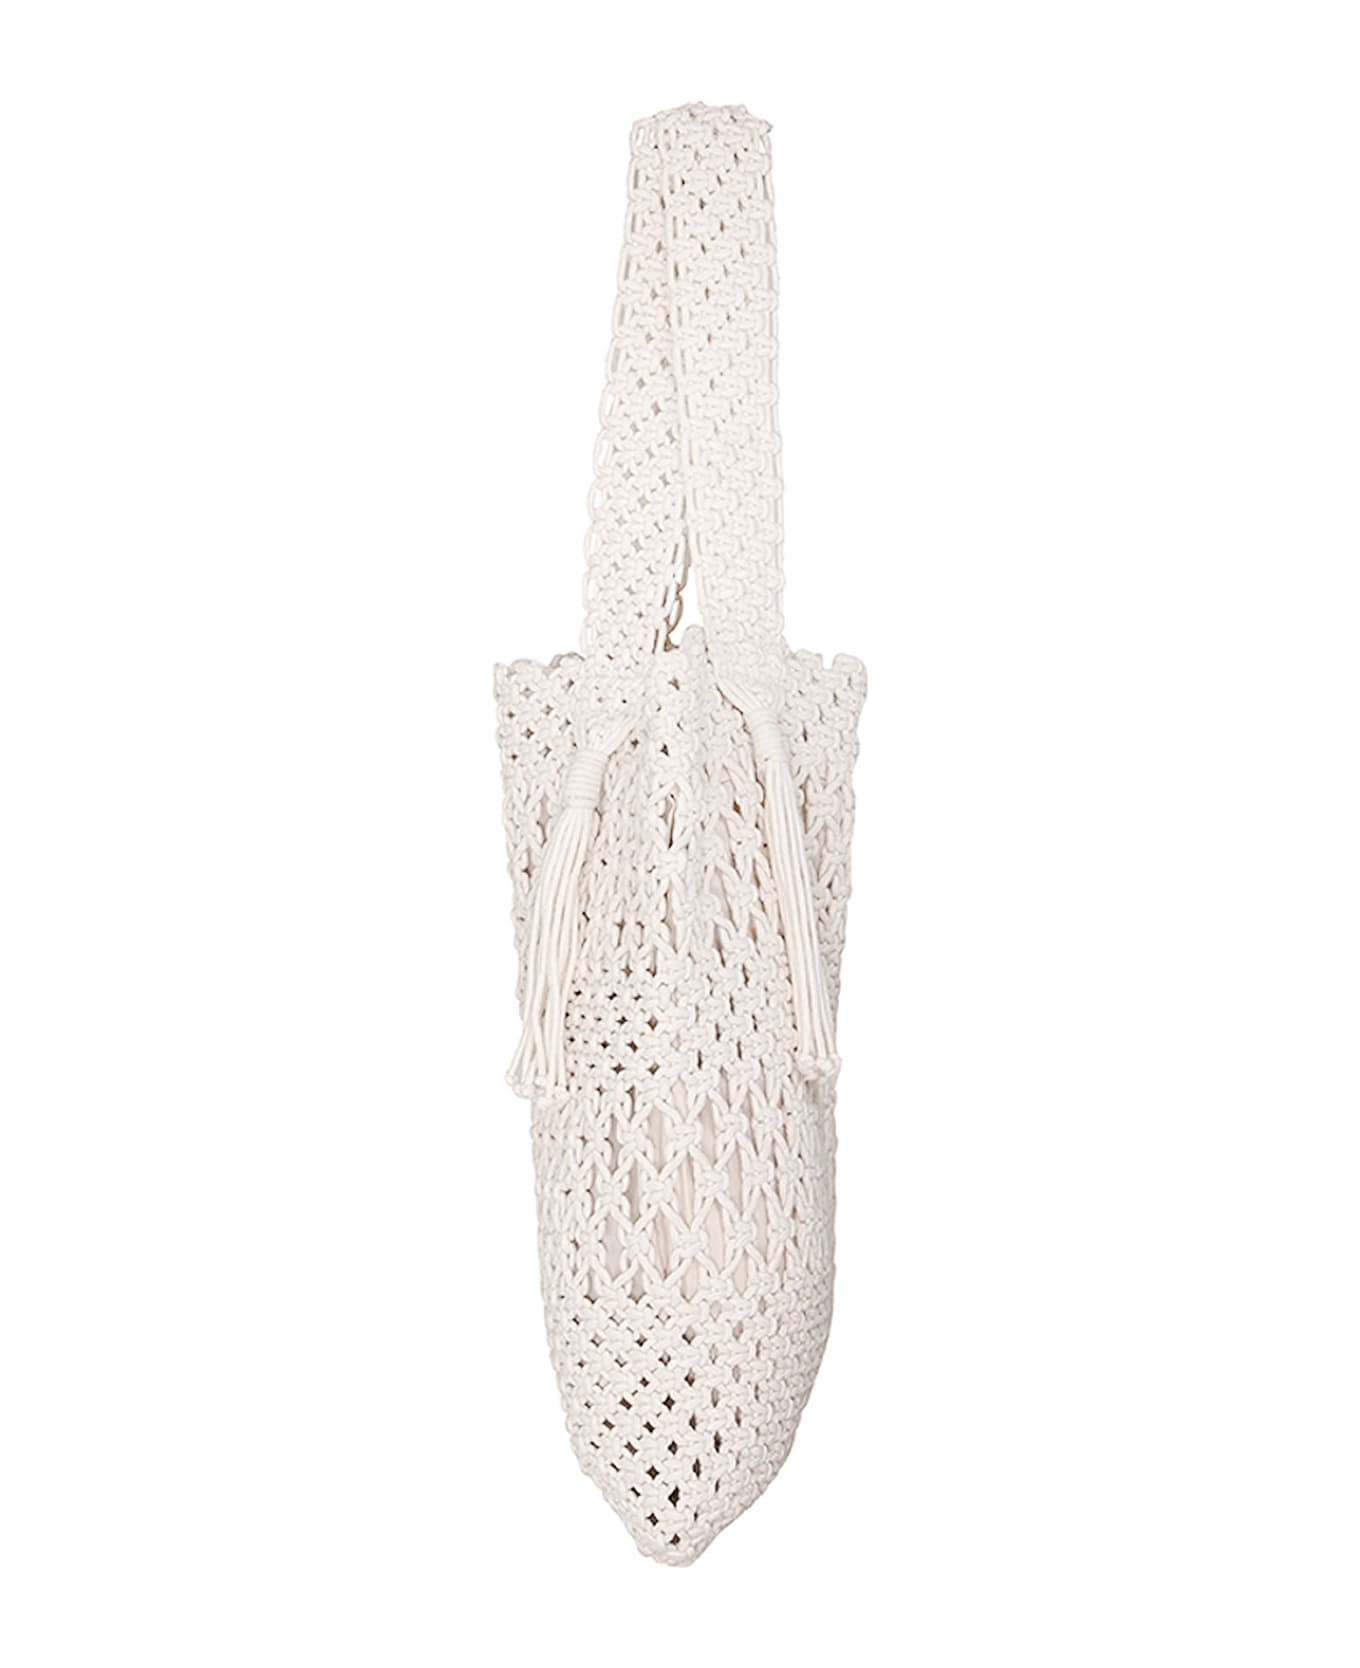 Zimmermann Ivory Crochet Shopping Bag - Beige